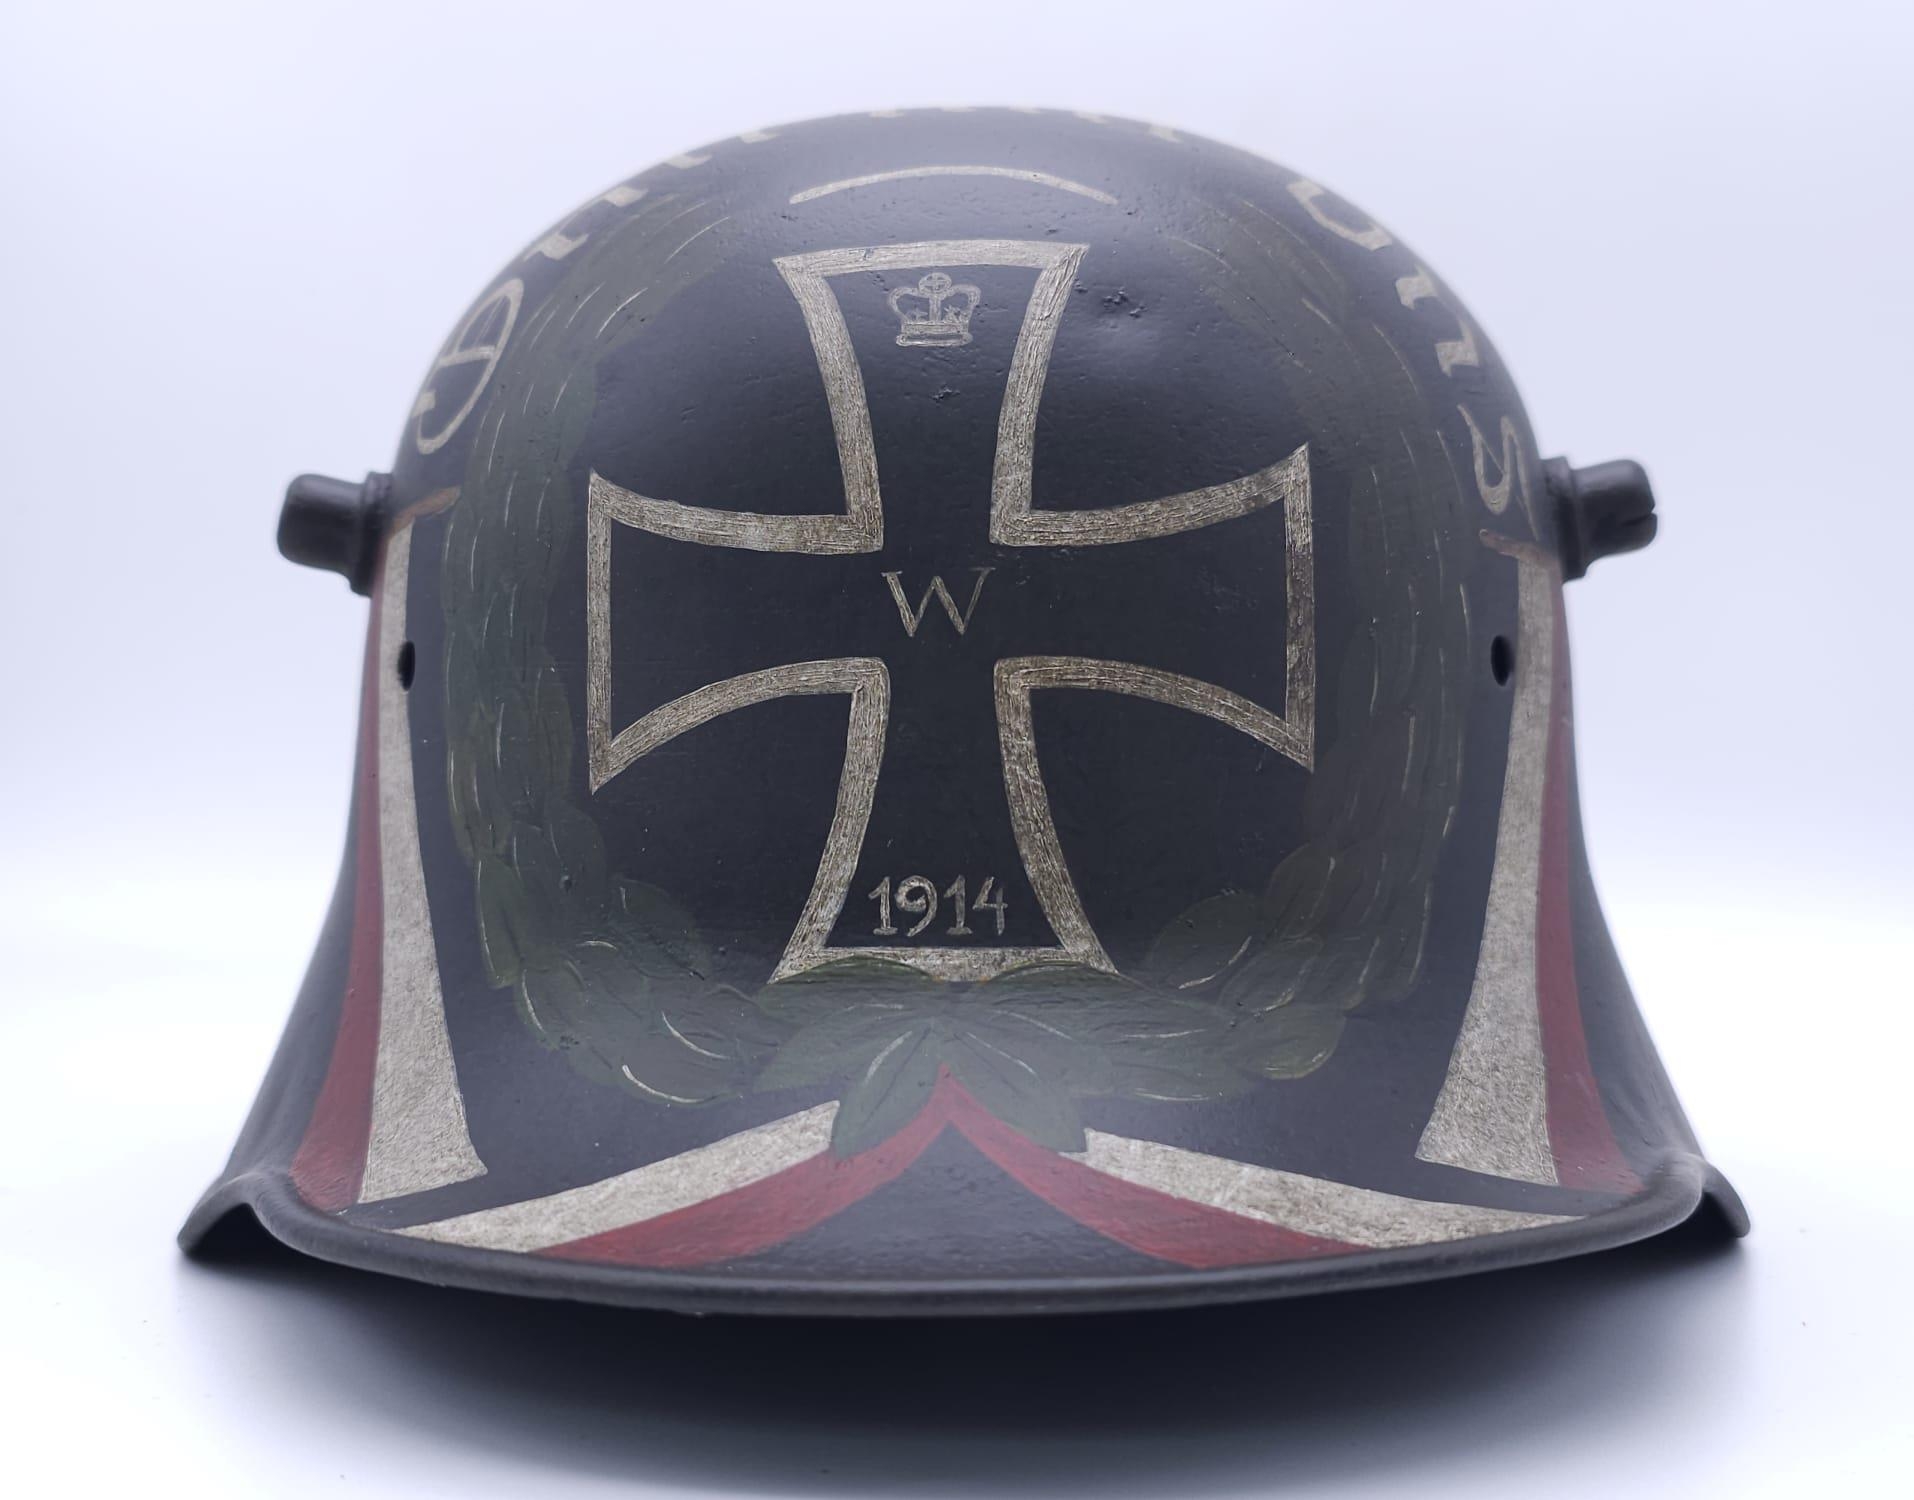 WW1 German Memorial Helmet. Original WW1 German Stahlhelm helmet with post ..War memorial painting. - Image 2 of 7